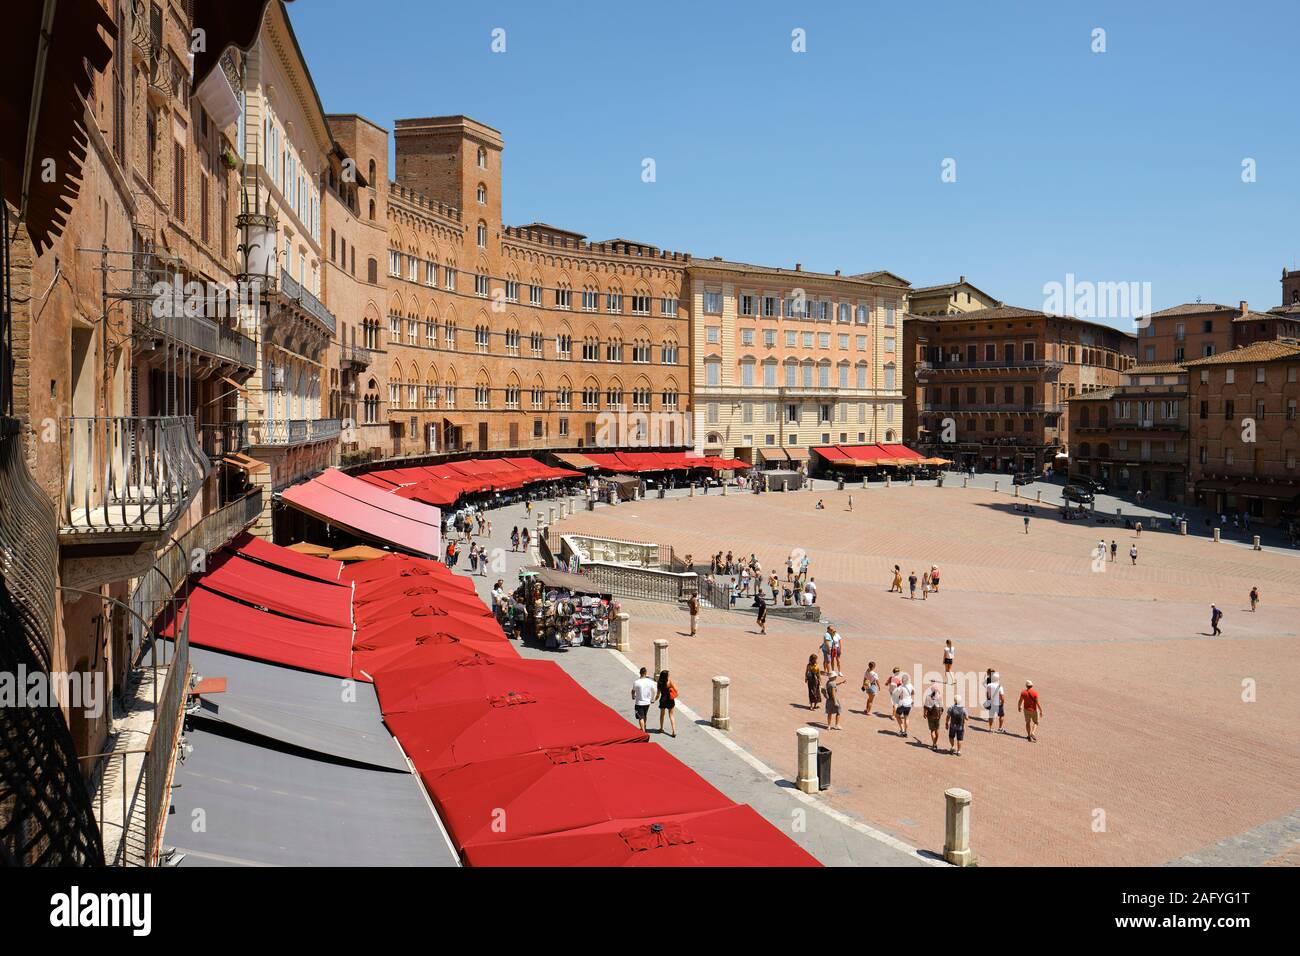 La histórica arquitectura de la plaza medieval Piazza del Campo en el sitio del patrimonio mundial de la UNESCO de Siena, Toscana, Italia UE Foto de stock